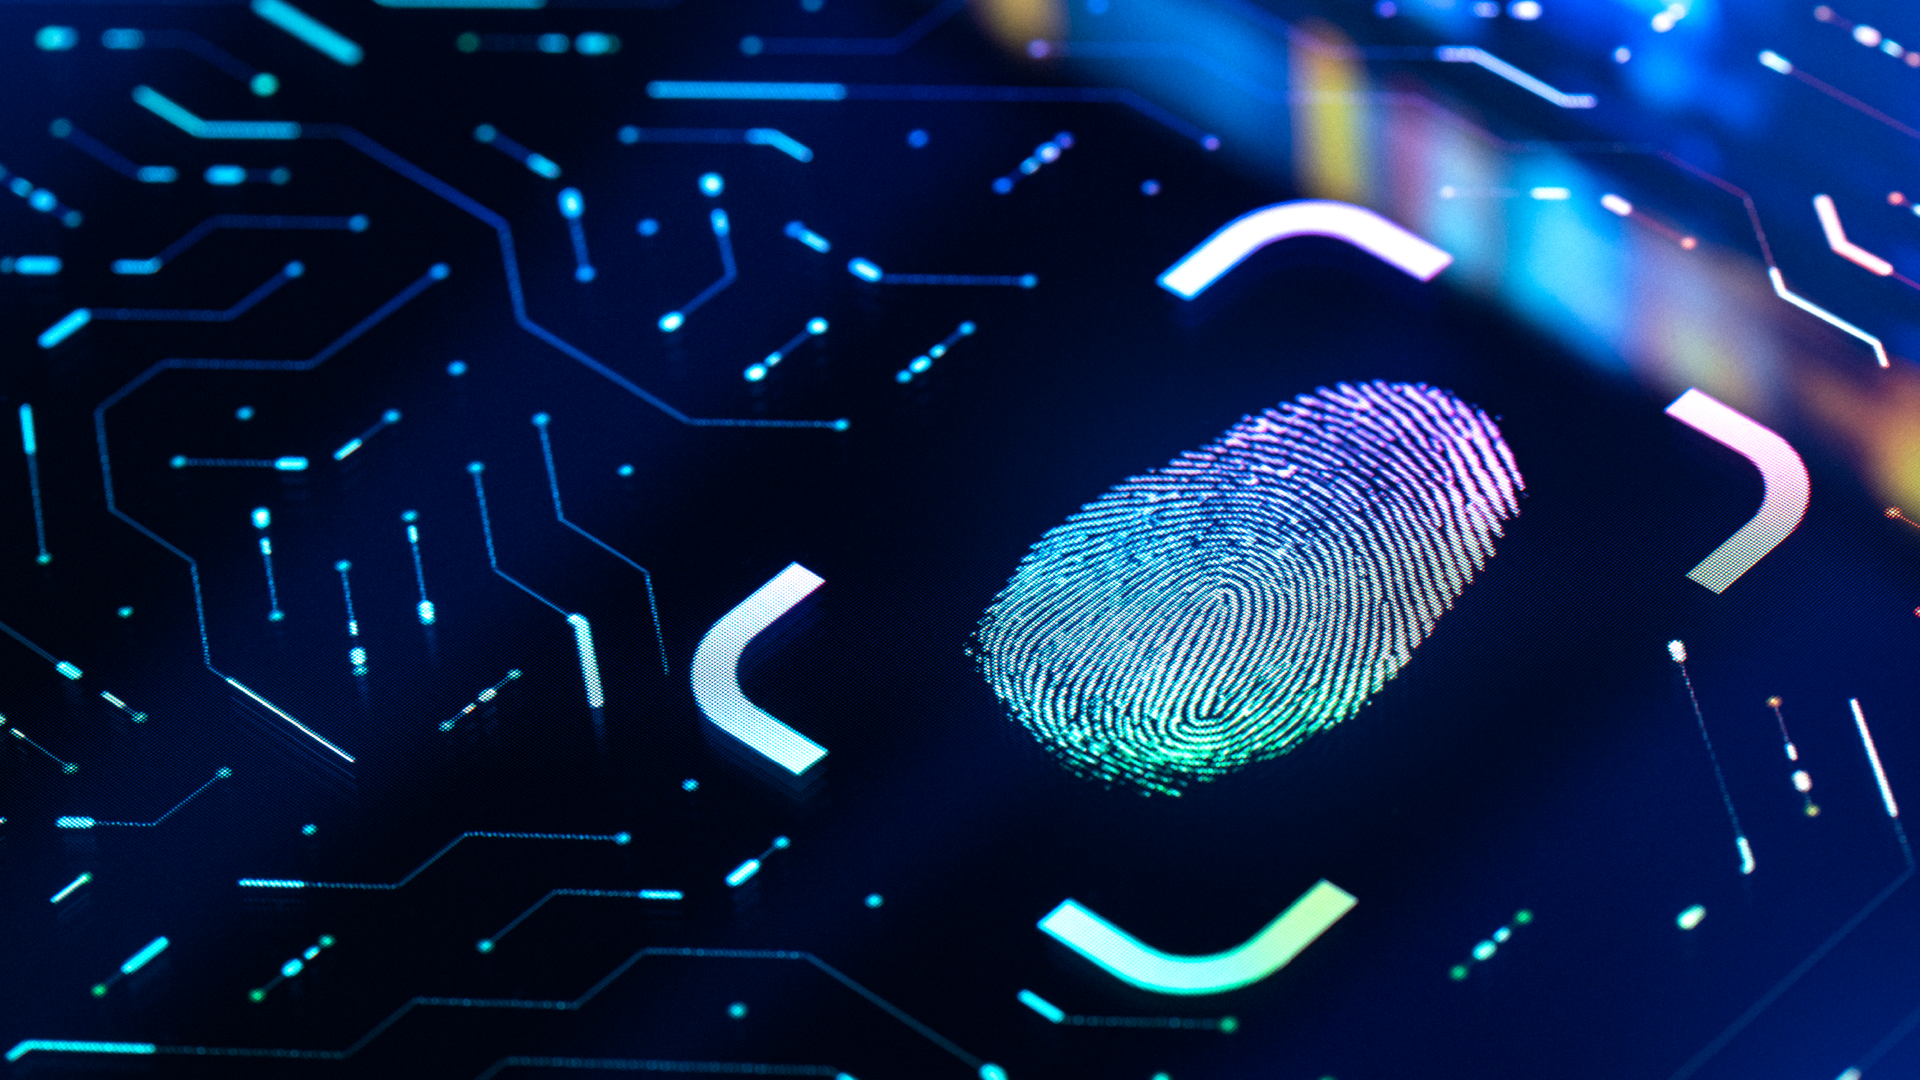 Fingerprint biometric authentication button